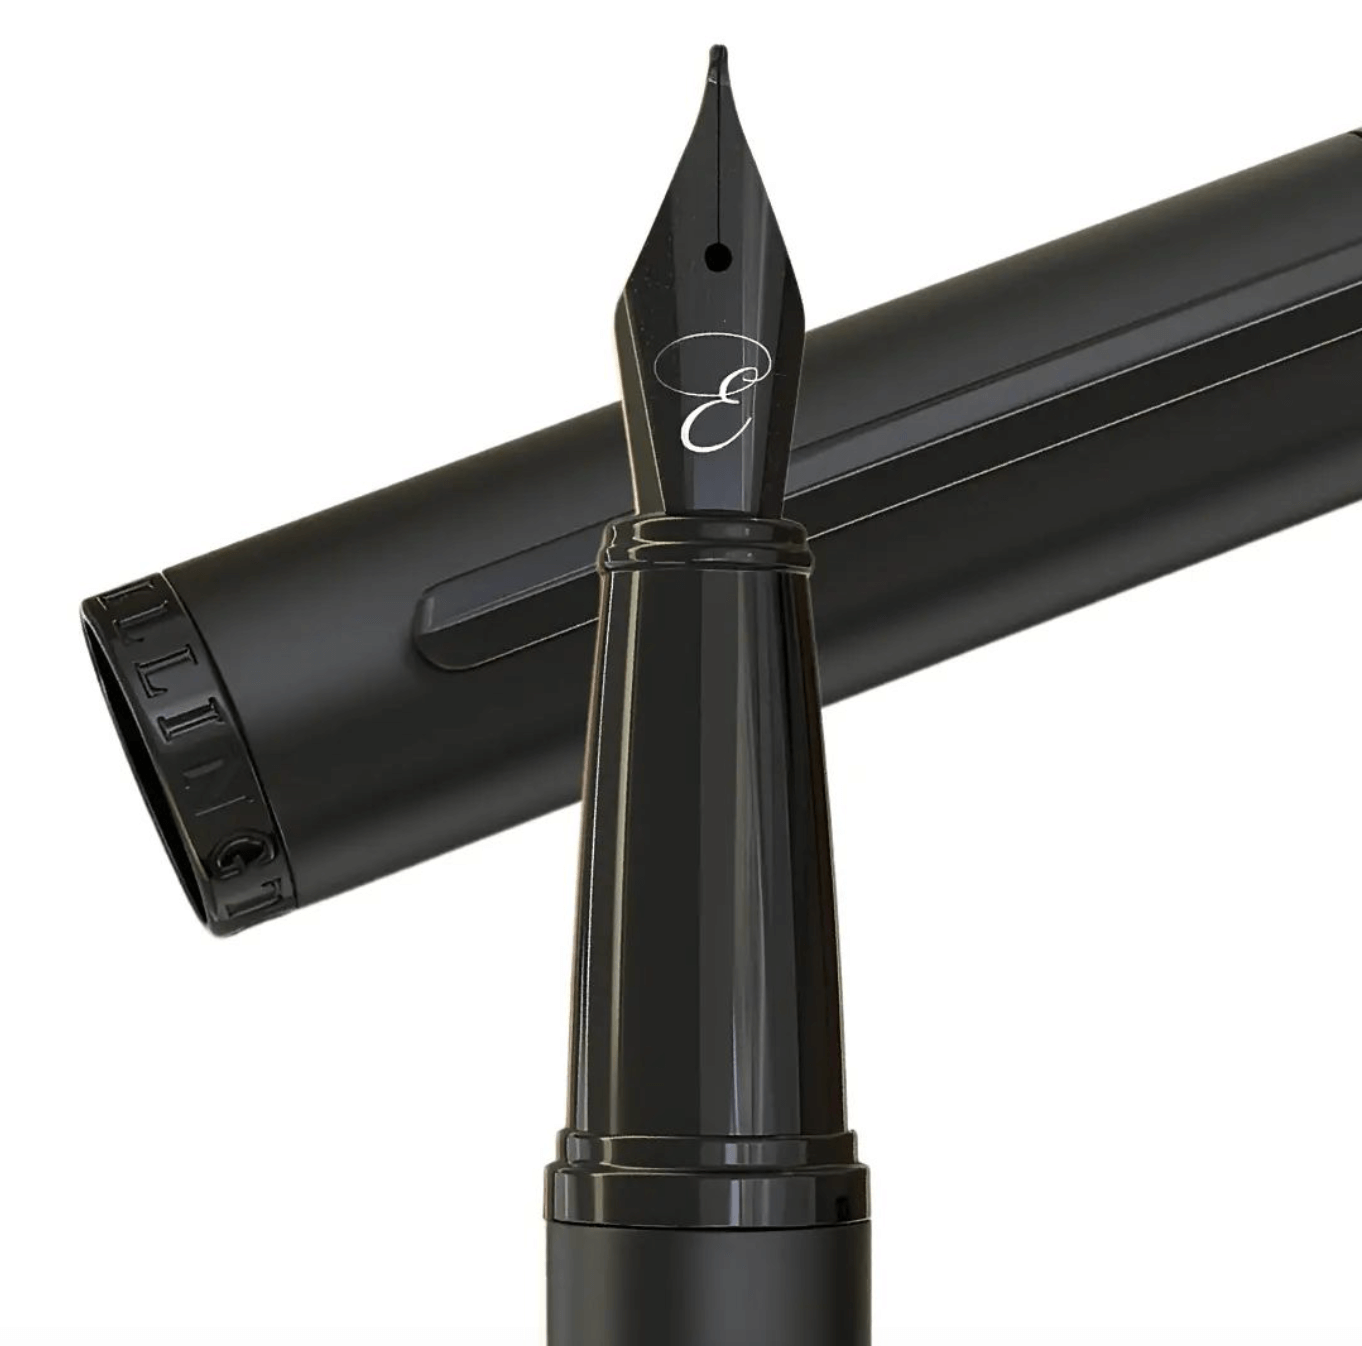 The Stealth Fountain Pen fountain pen